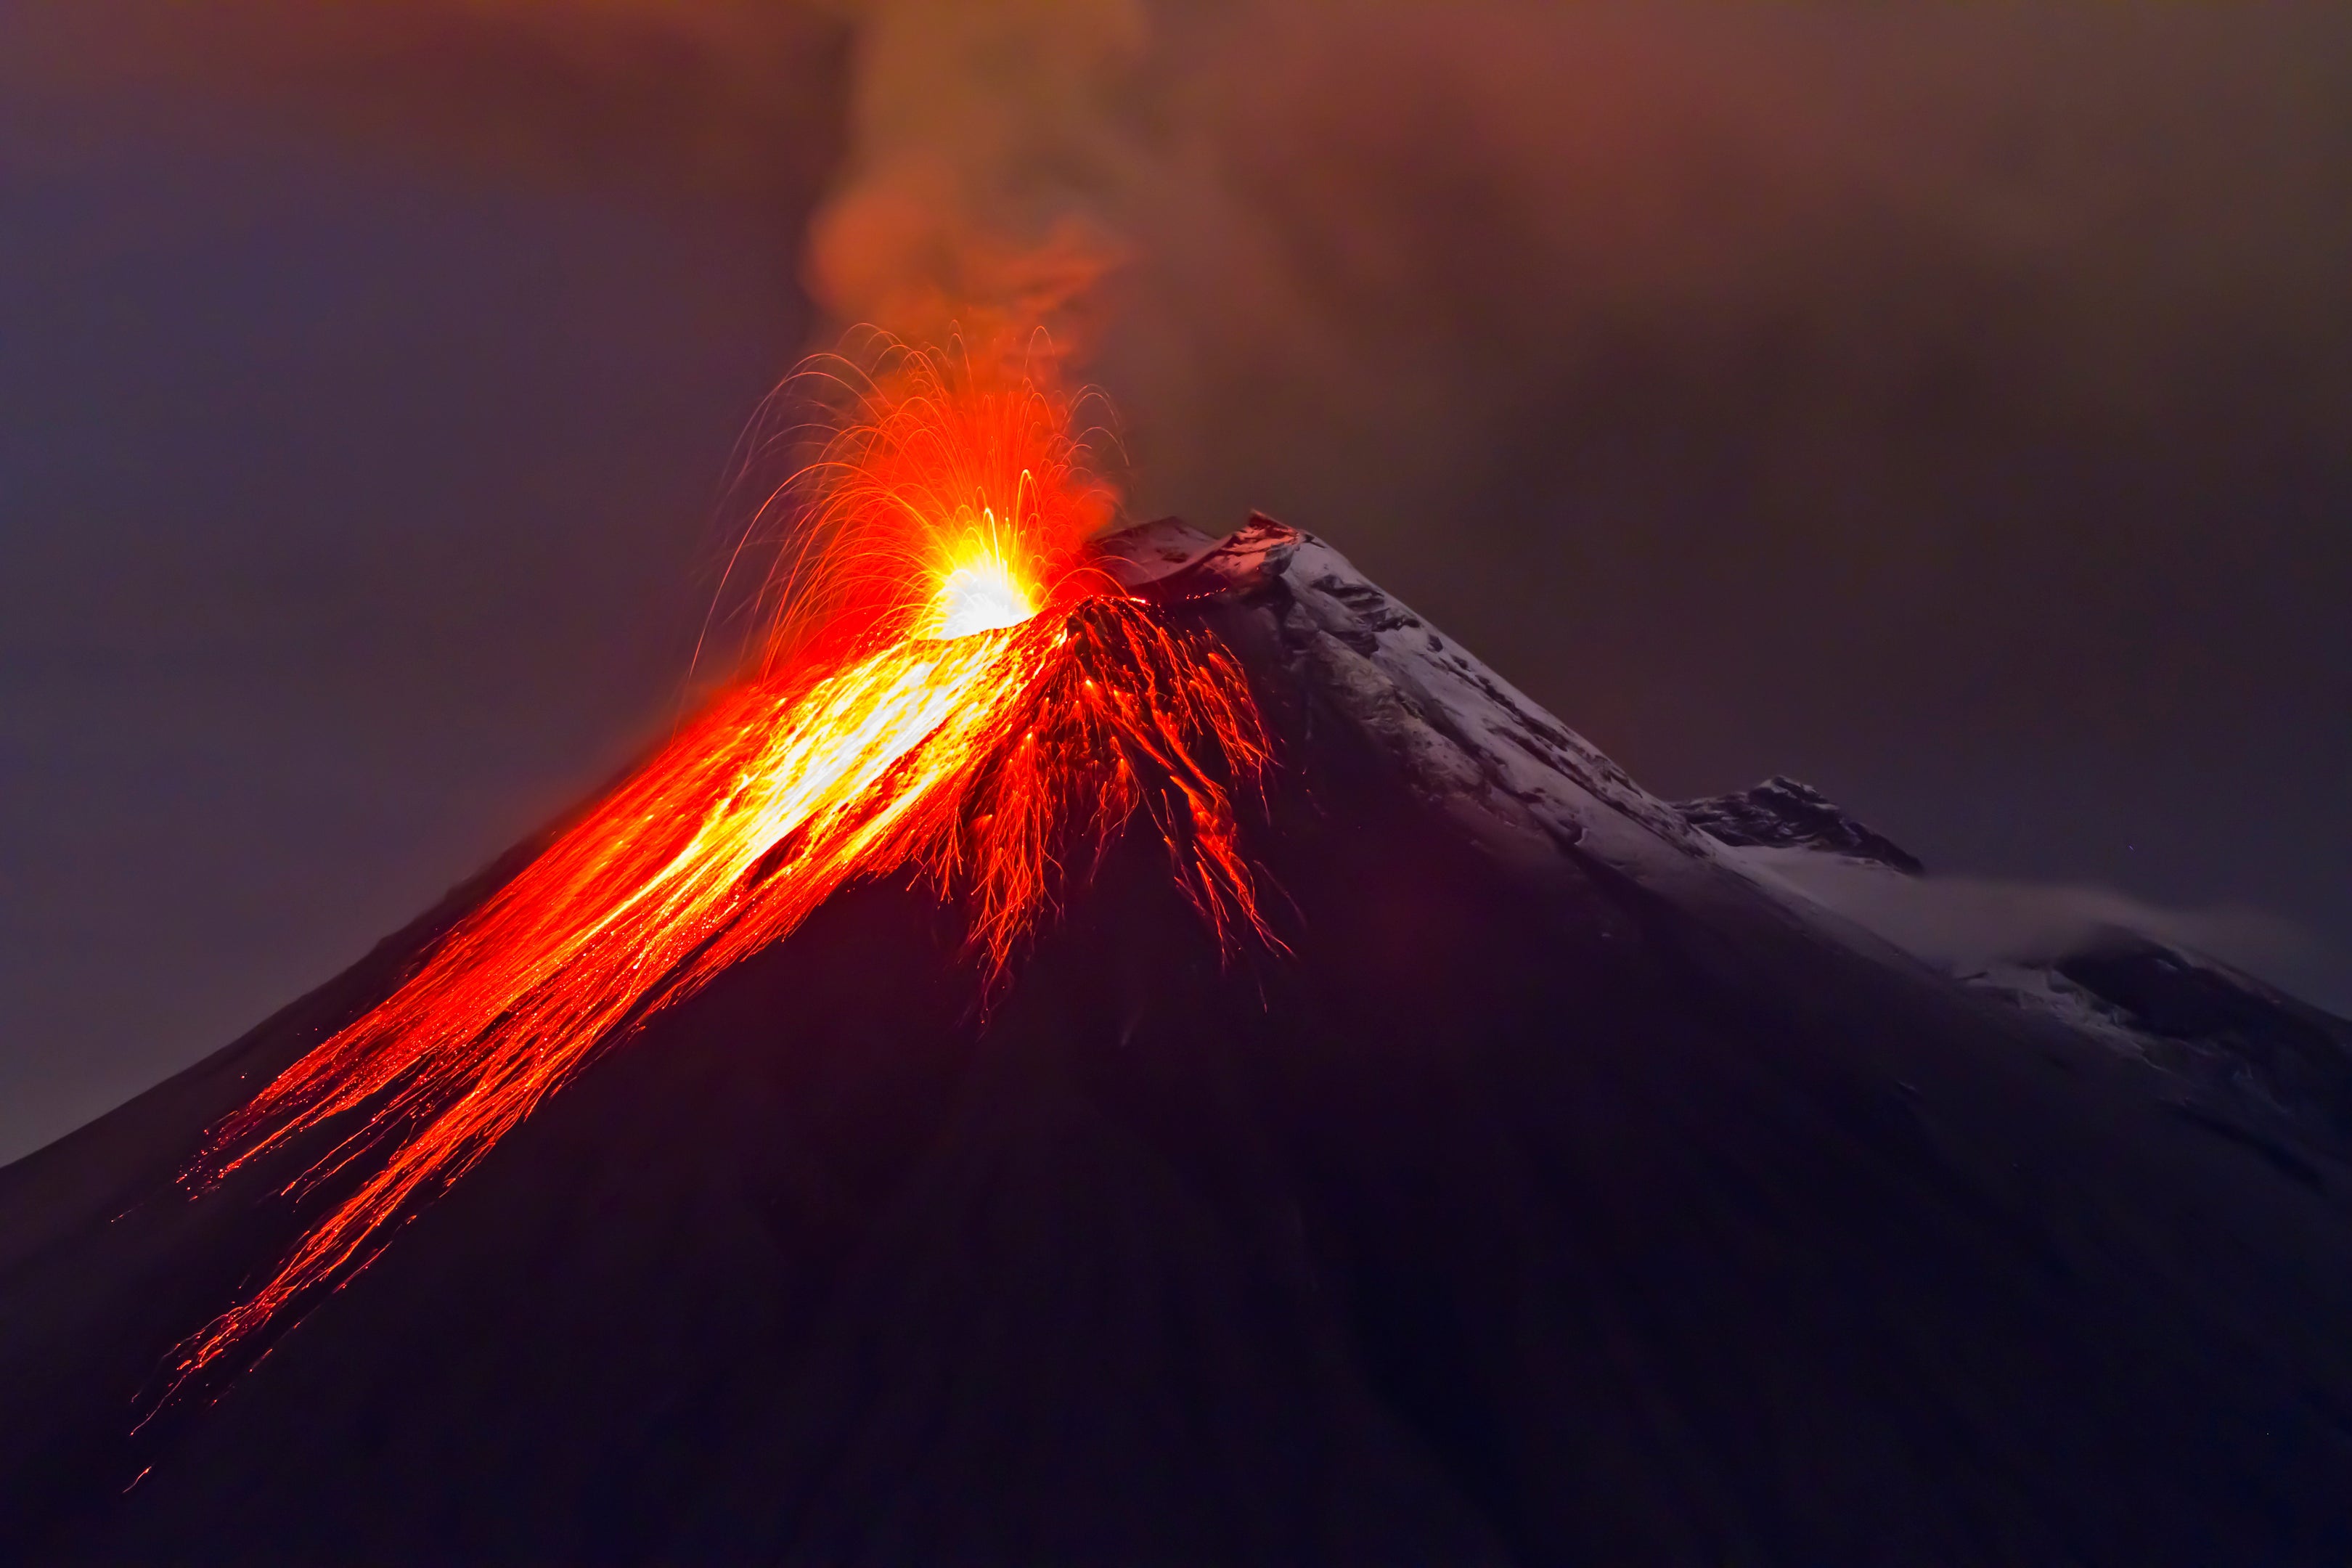 cinder cone eruption video